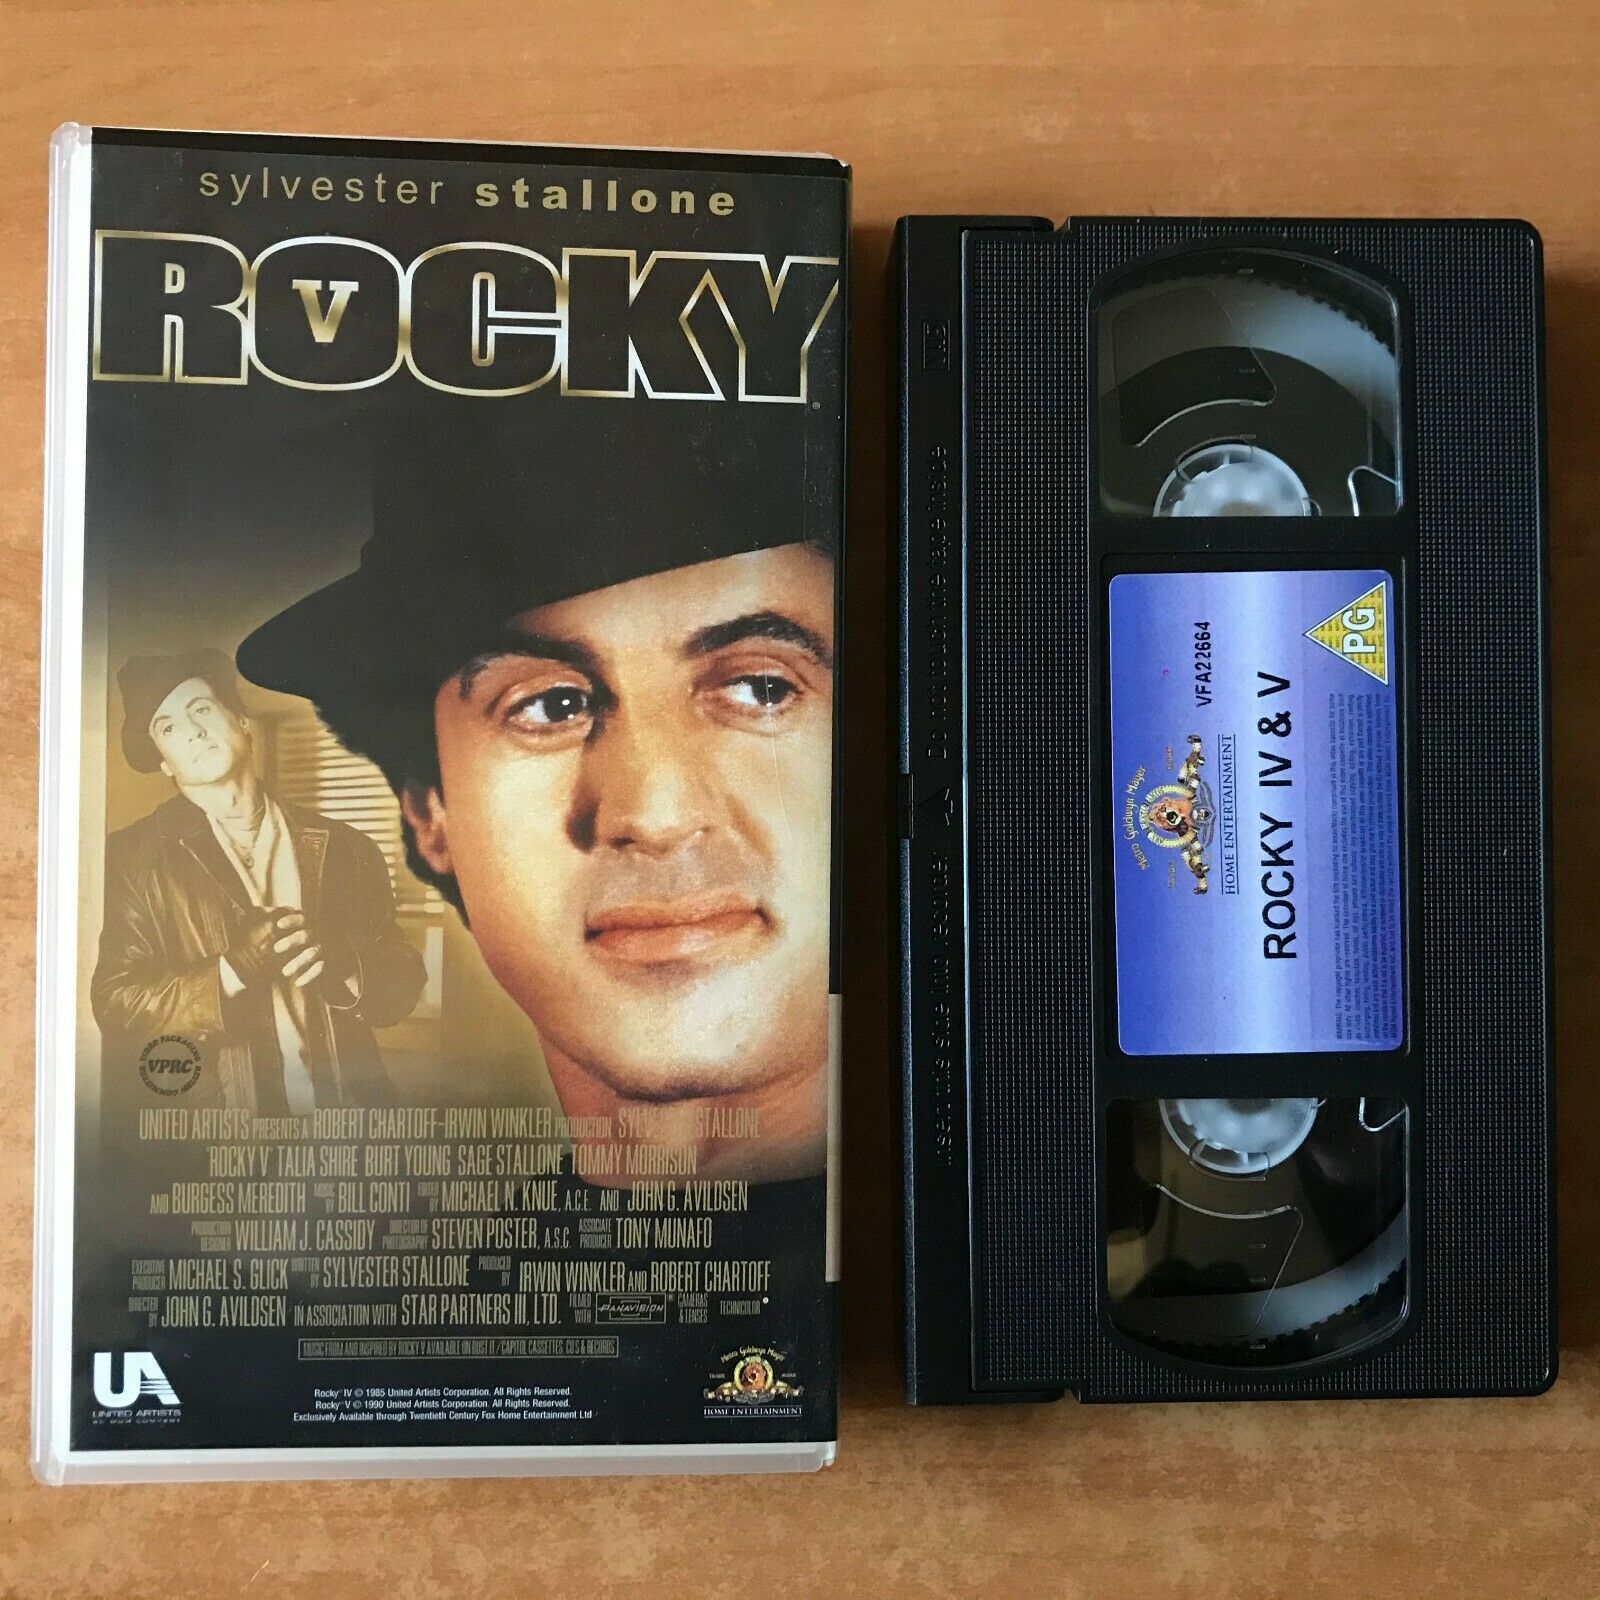 Rocky 4 / 5 : Stallone Vs. Lundgren - Sport Drama - Brigitte Nielsen - Pal VHS-